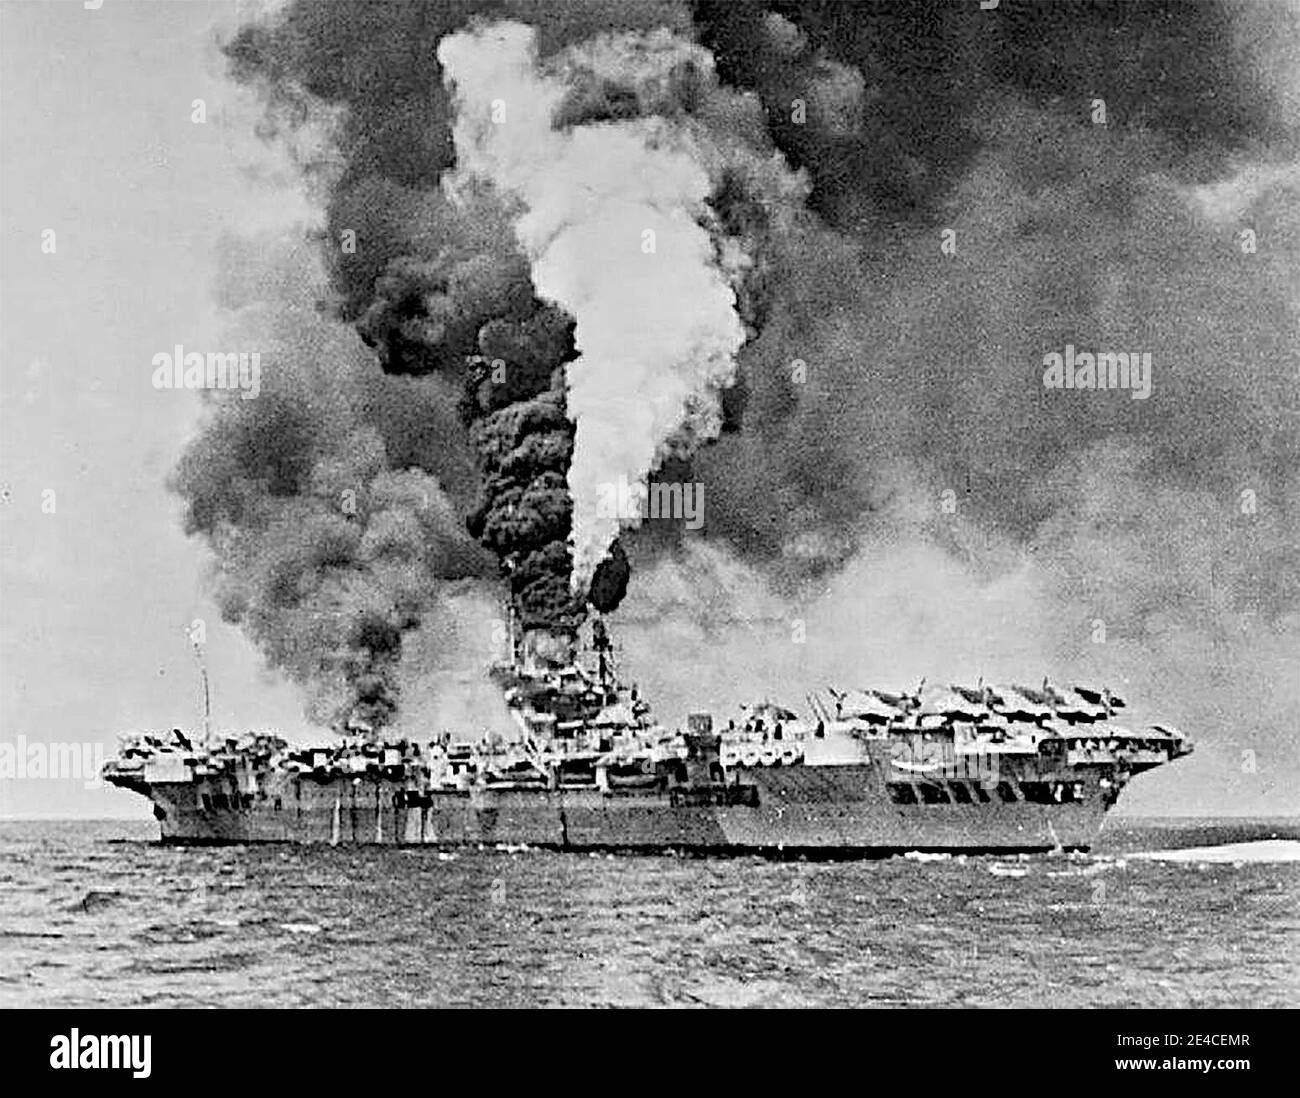 Le porte-avions HMS formidable (R67) en feu après avoir été frappé par un kamikaze au large de Sakishima Gunto. Formidable a été frappé à 1130 heures, le kamikaze faisant une bosselure massive d'environ 3 m de long, 0.6 m de large et de profondeur dans le pont de vol blindé. Une grande rupture d'acier s'est envolée à travers le pont du hangar et la chaufferie centrale, où elle a rompu une ligne de vapeur, et est venue se reposer dans un réservoir de carburant, ce qui a commencé un incendie majeur dans le parc d'avions. Huit membres d'équipage ont été tués et quarante-sept ont été blessés. Un Corsair de Vought et dix Avengers de Grumman ont été détruits. 4 mai 1945 Banque D'Images